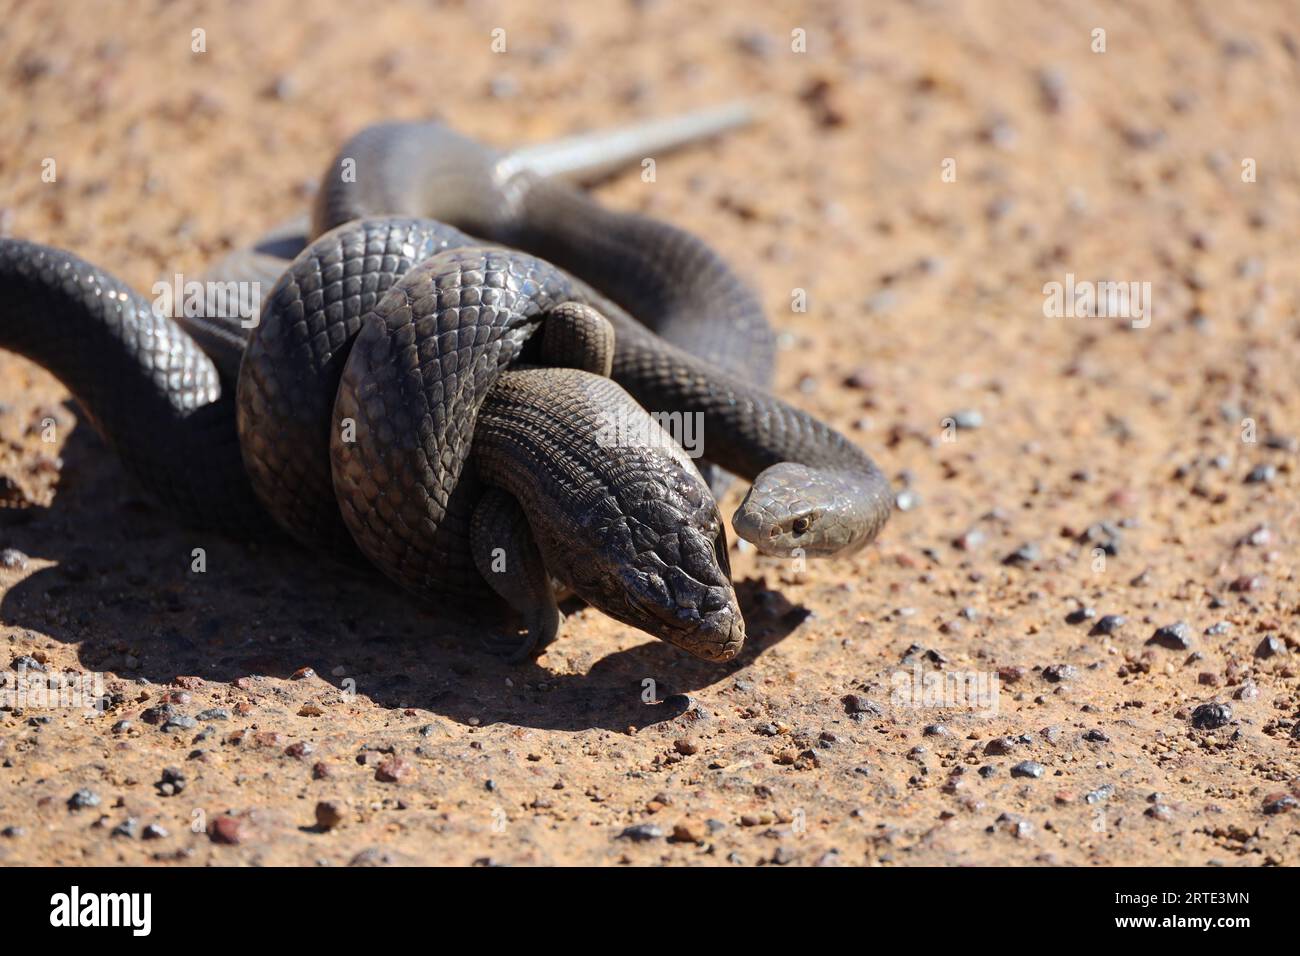 Eine Nahaufnahme einer dugiten Schlange in der Größe ihrer Mahlzeit, die sich zum Verzehr vorbereitet Stockfoto